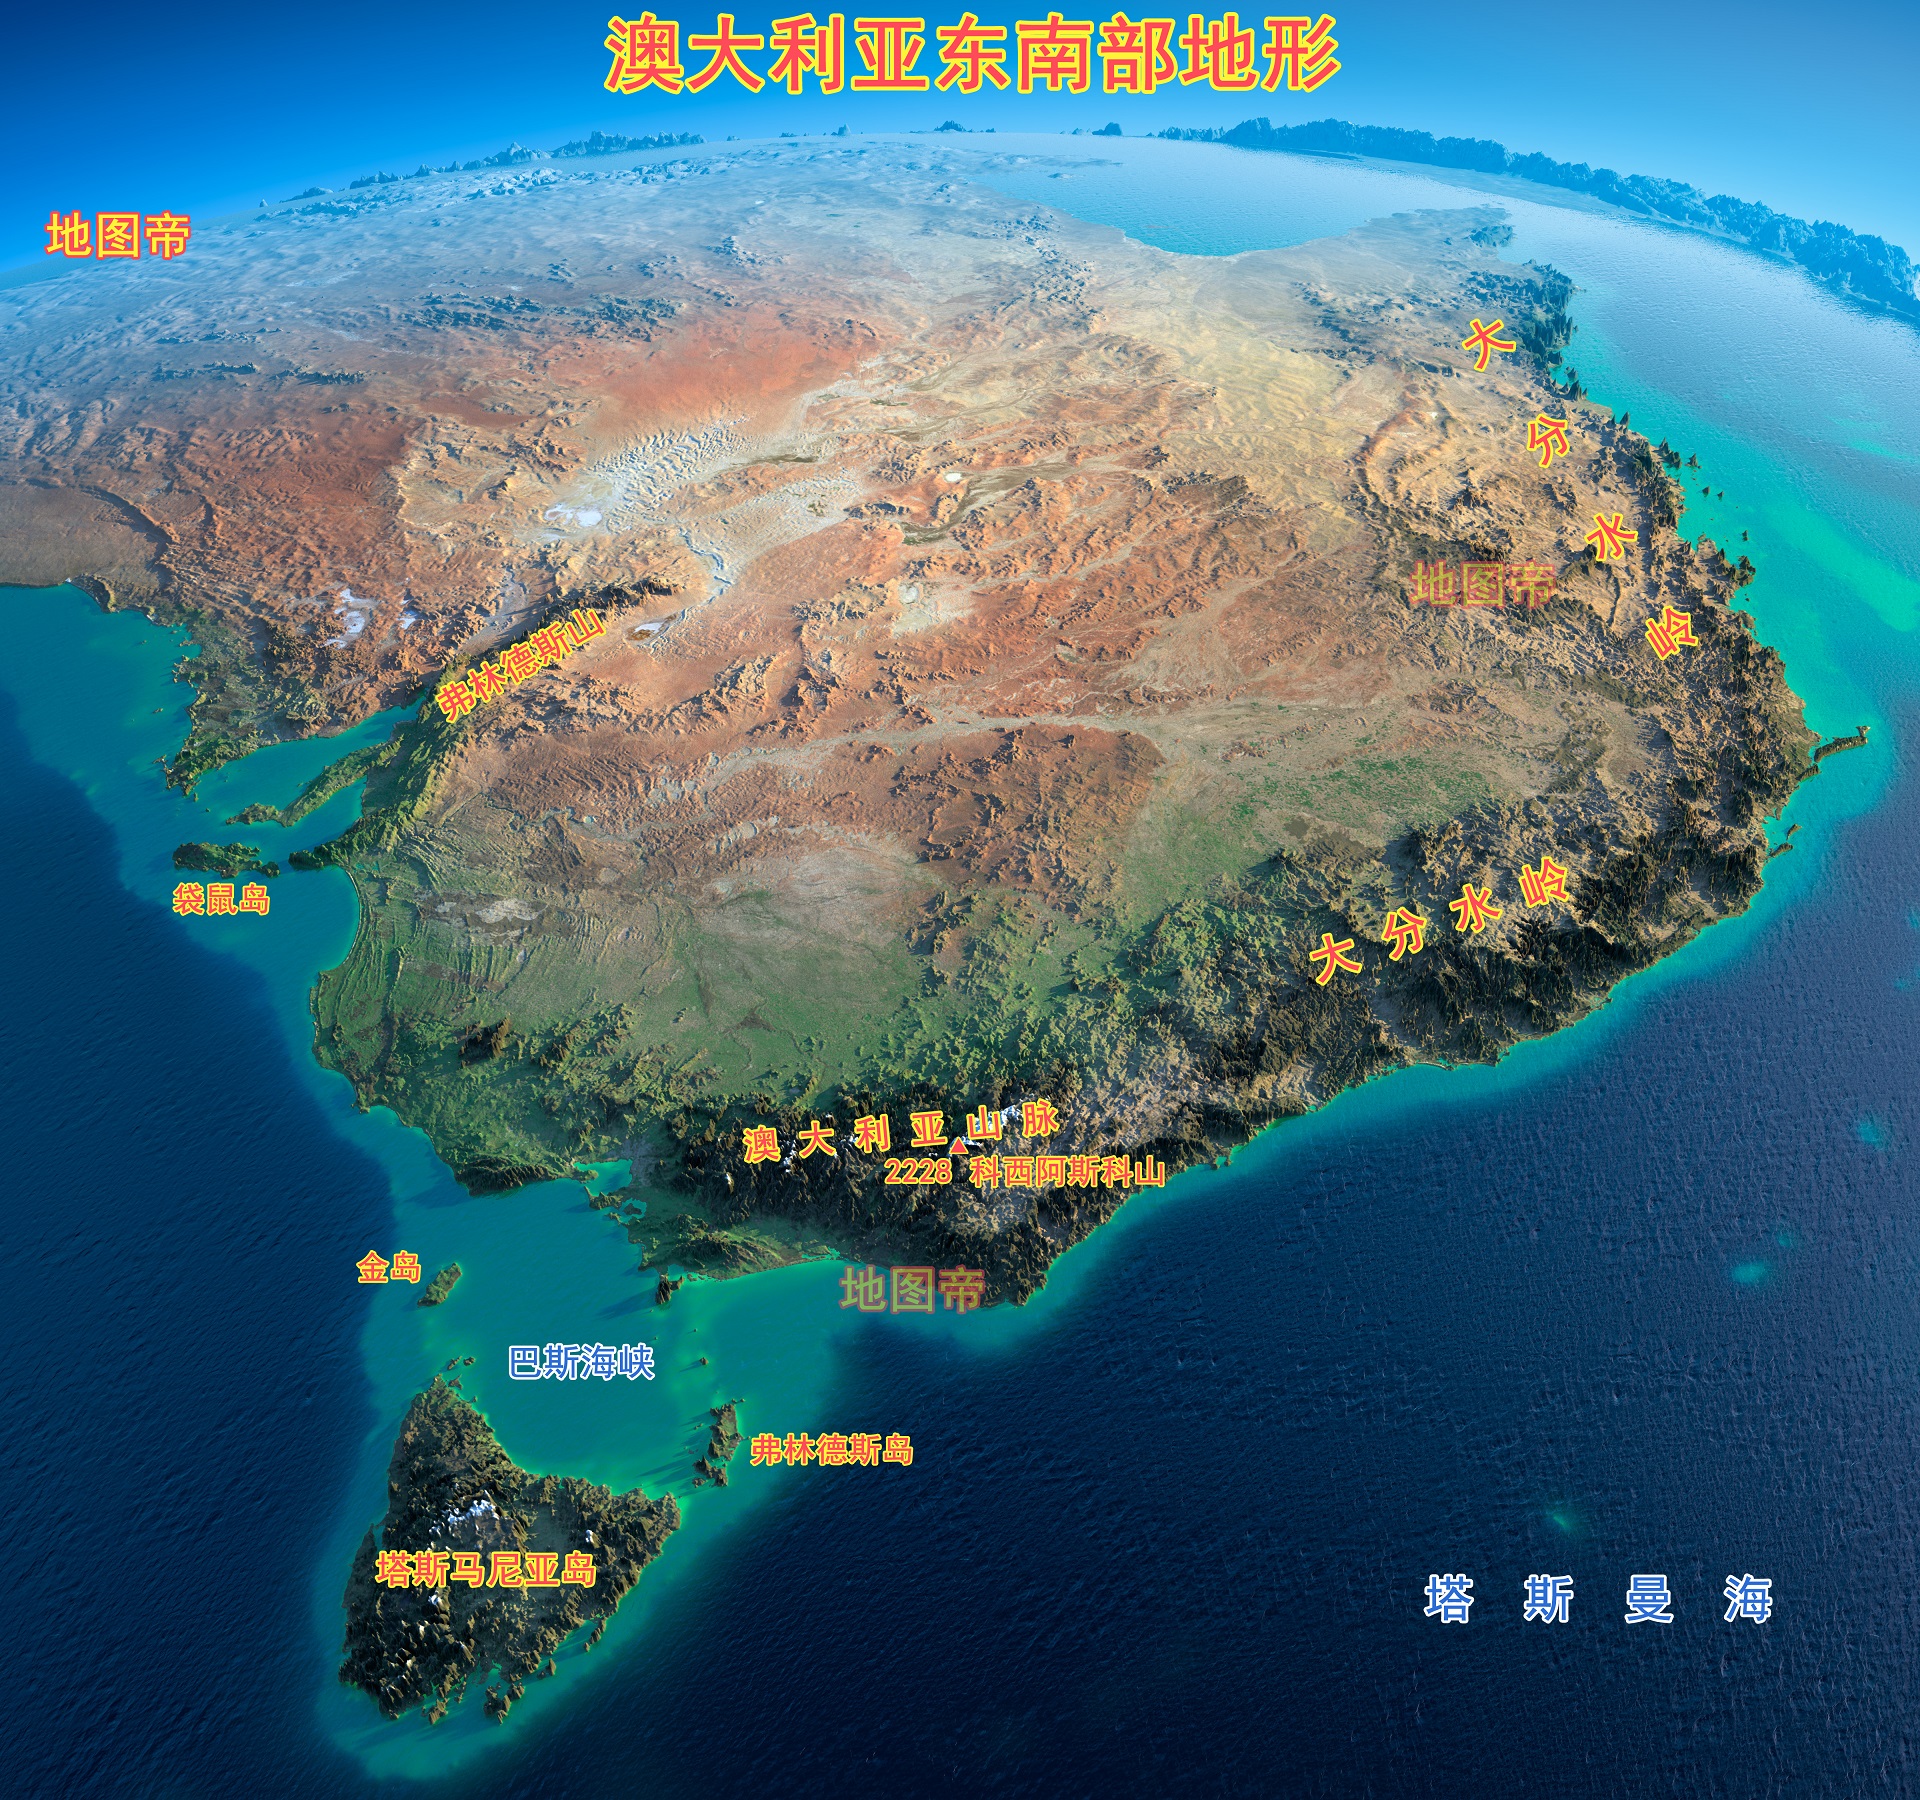 澳大利亚面积最大的岛,比台湾岛还大,看地图一目了然